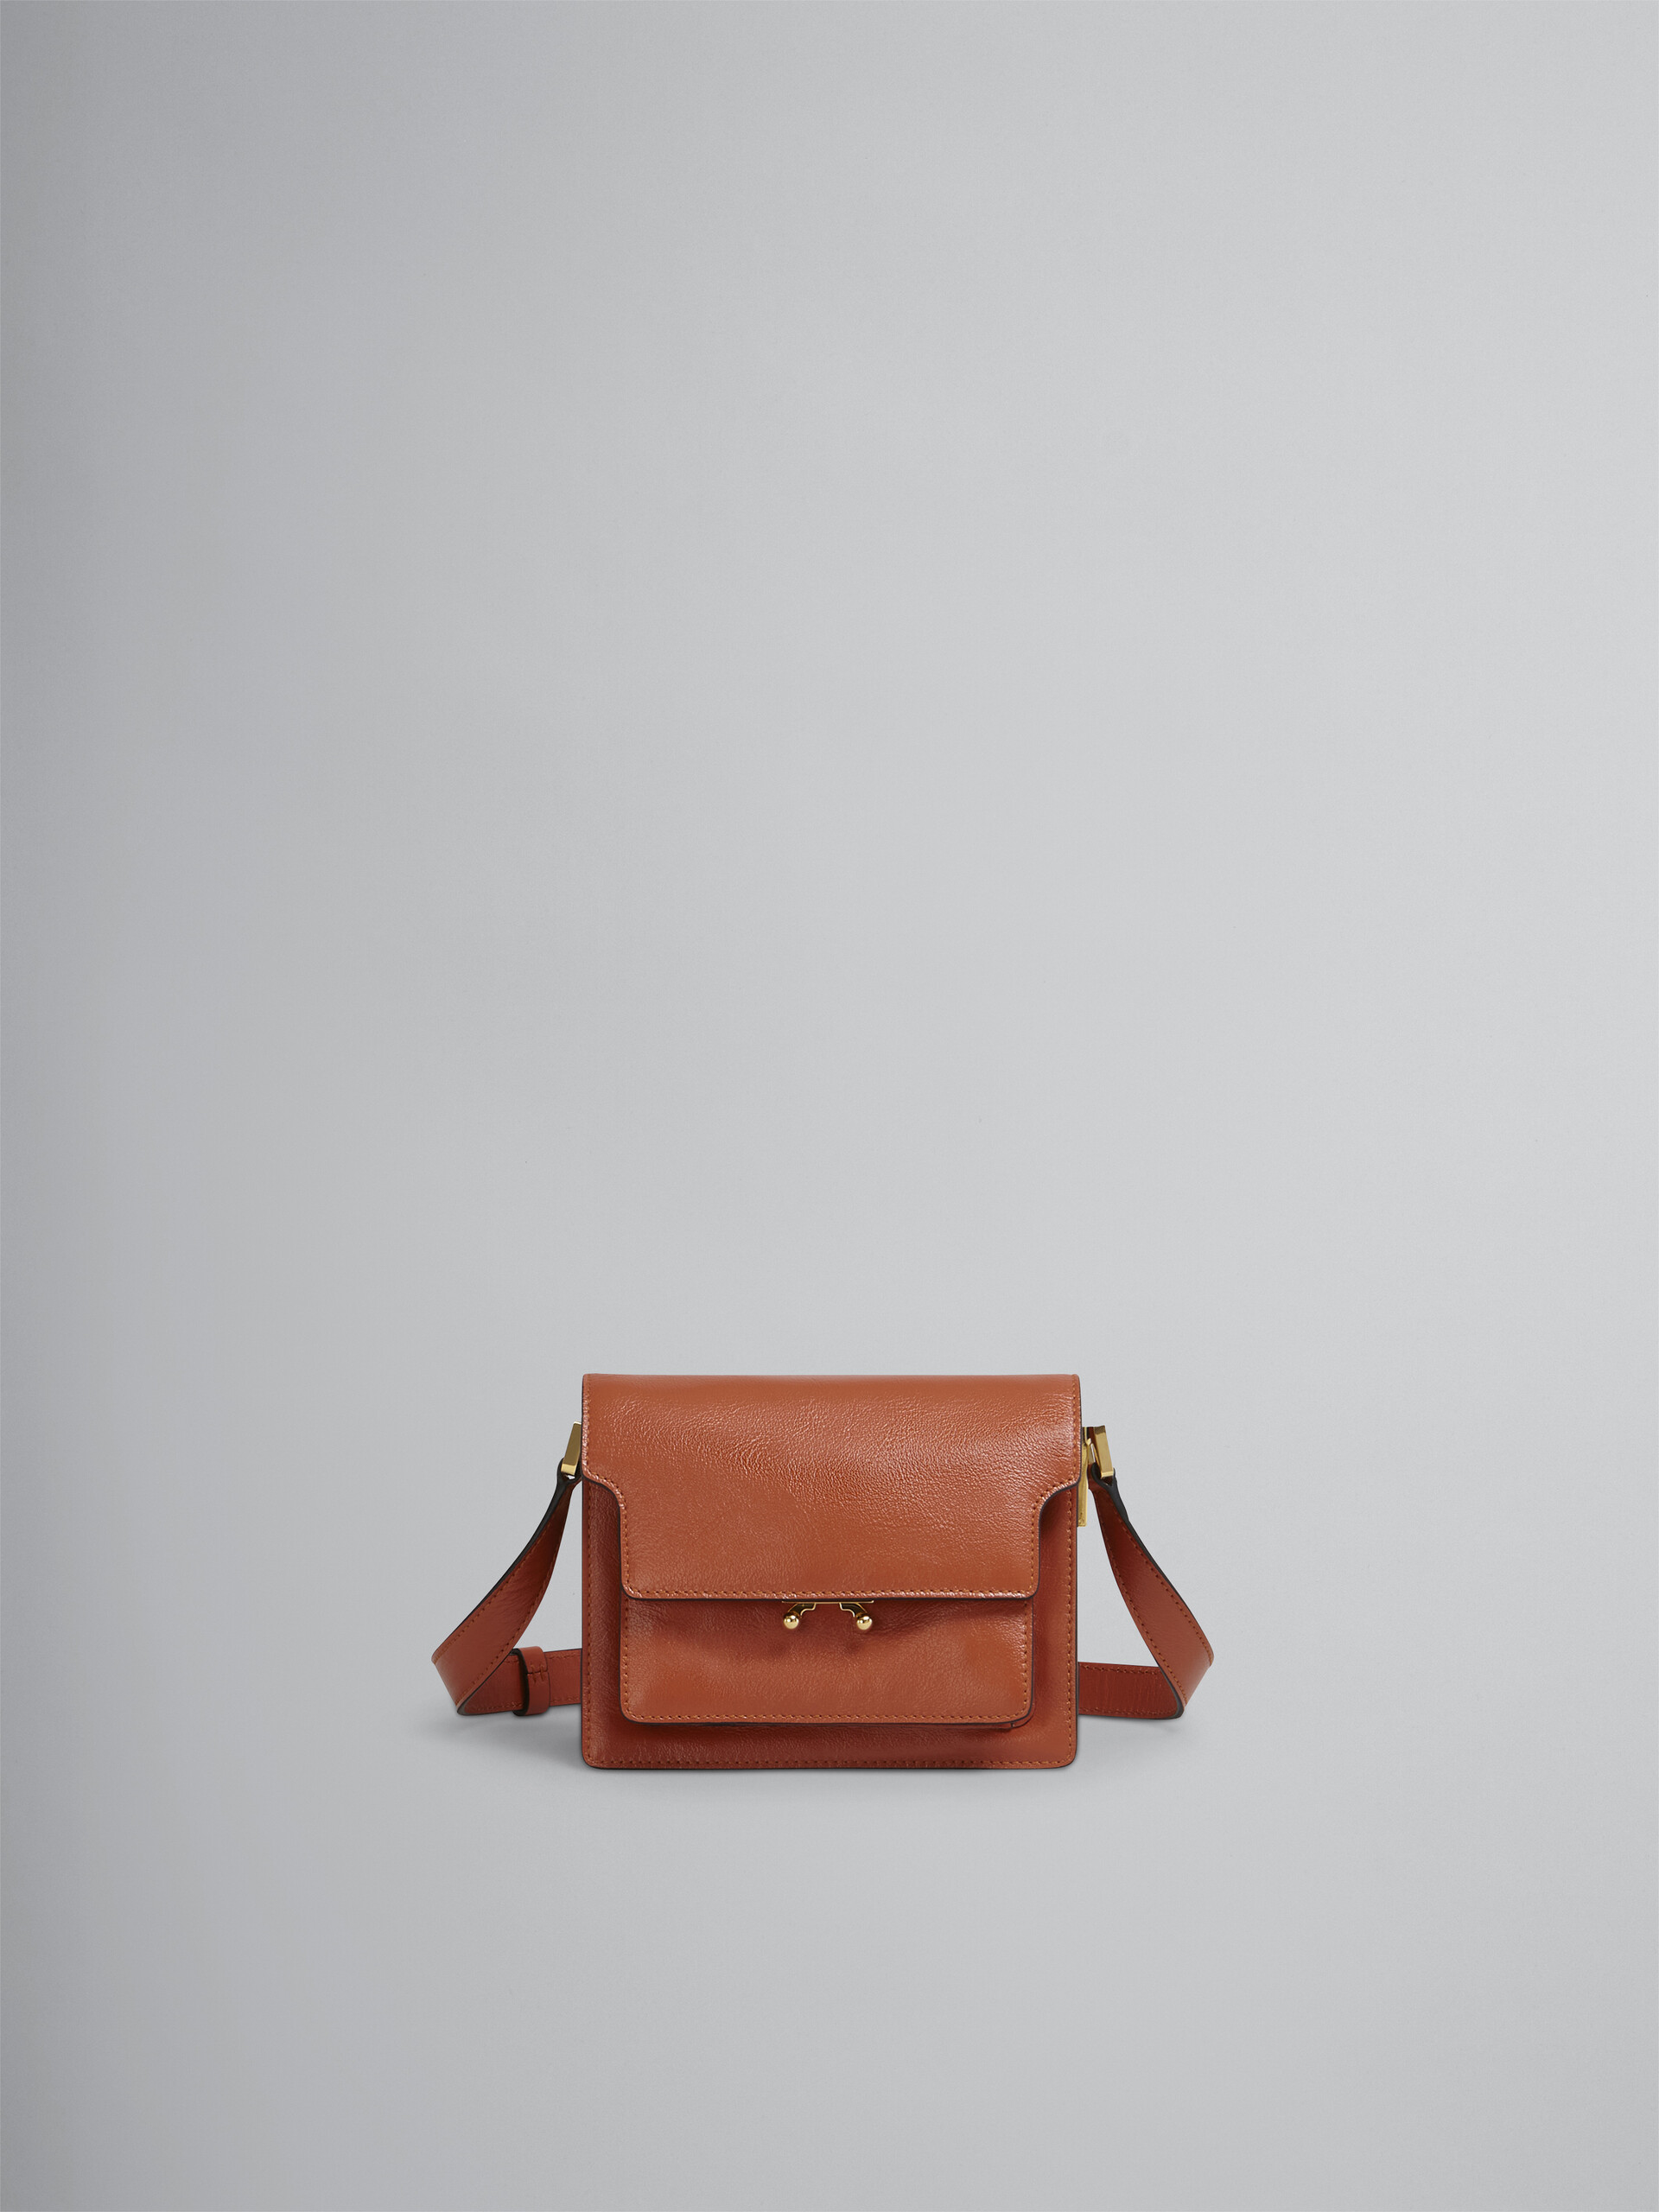 TRUNK SOFT mini bag in brown leather - Shoulder Bag - Image 1